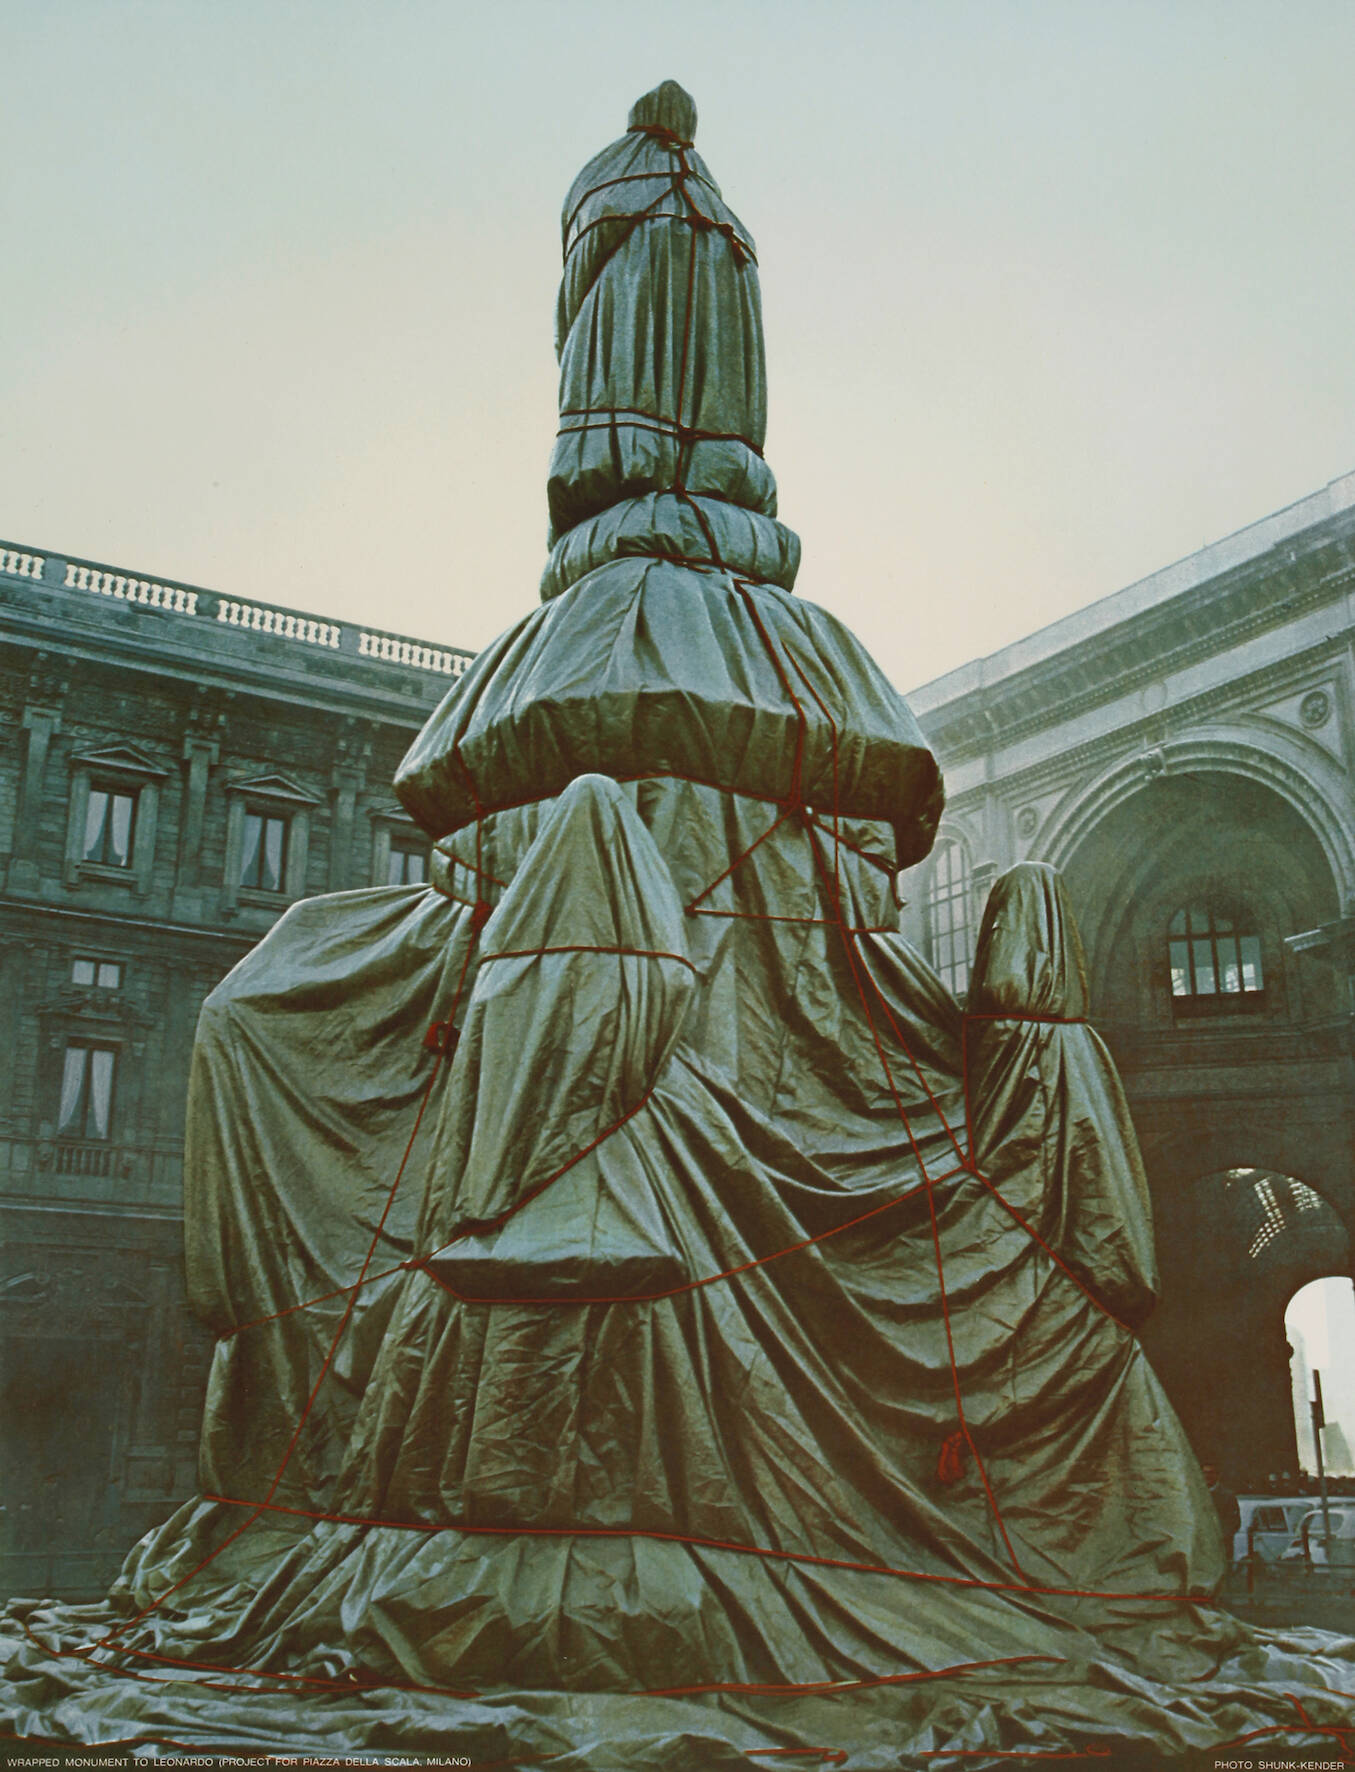 Christo, "Wrapped Monument to Leonardo"